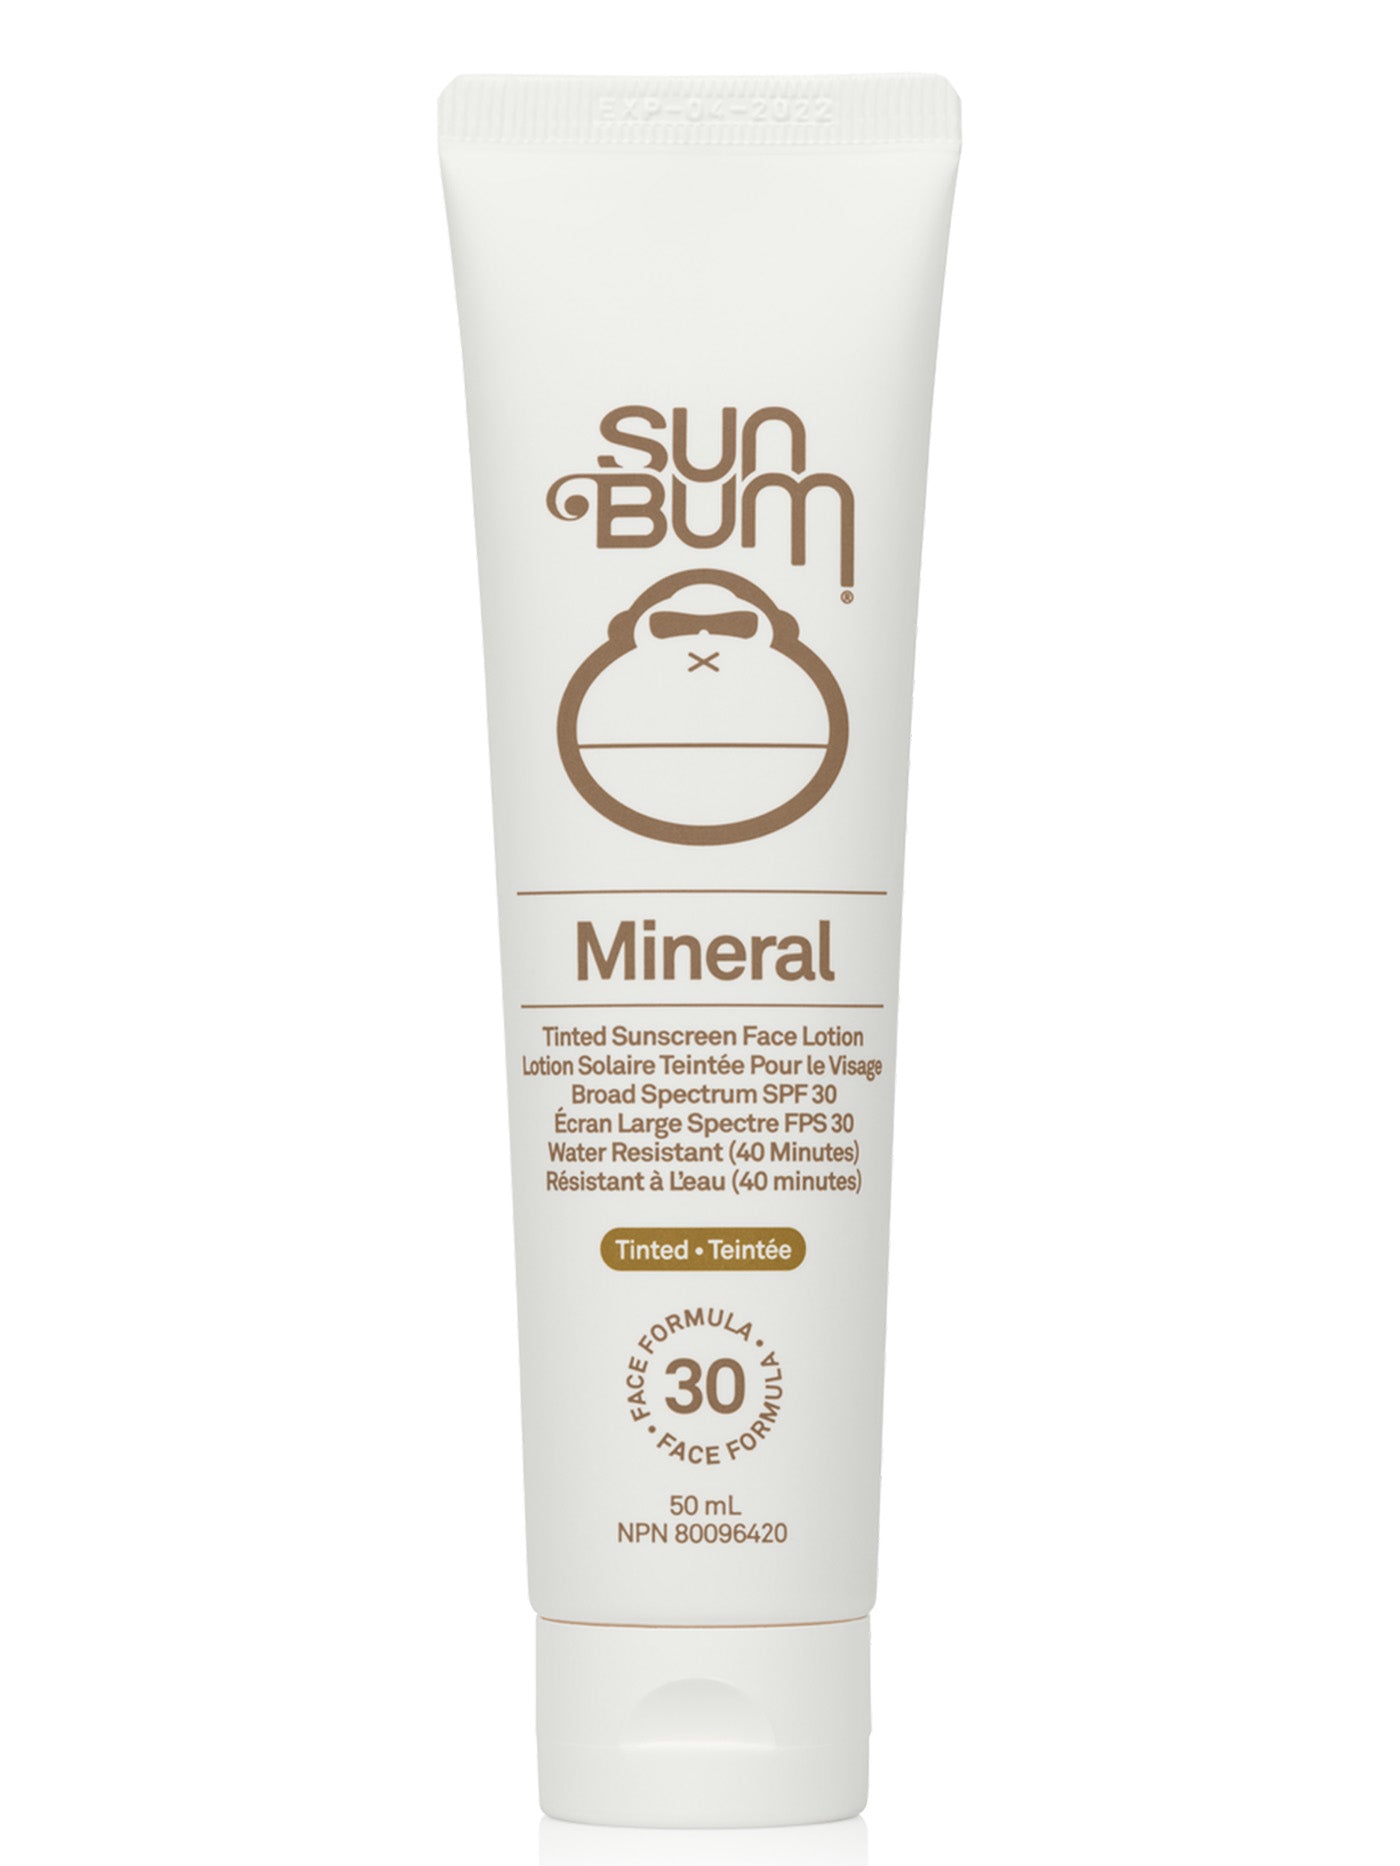 Sun Bum SPF 30 Mineral Face Tint Sunscreen